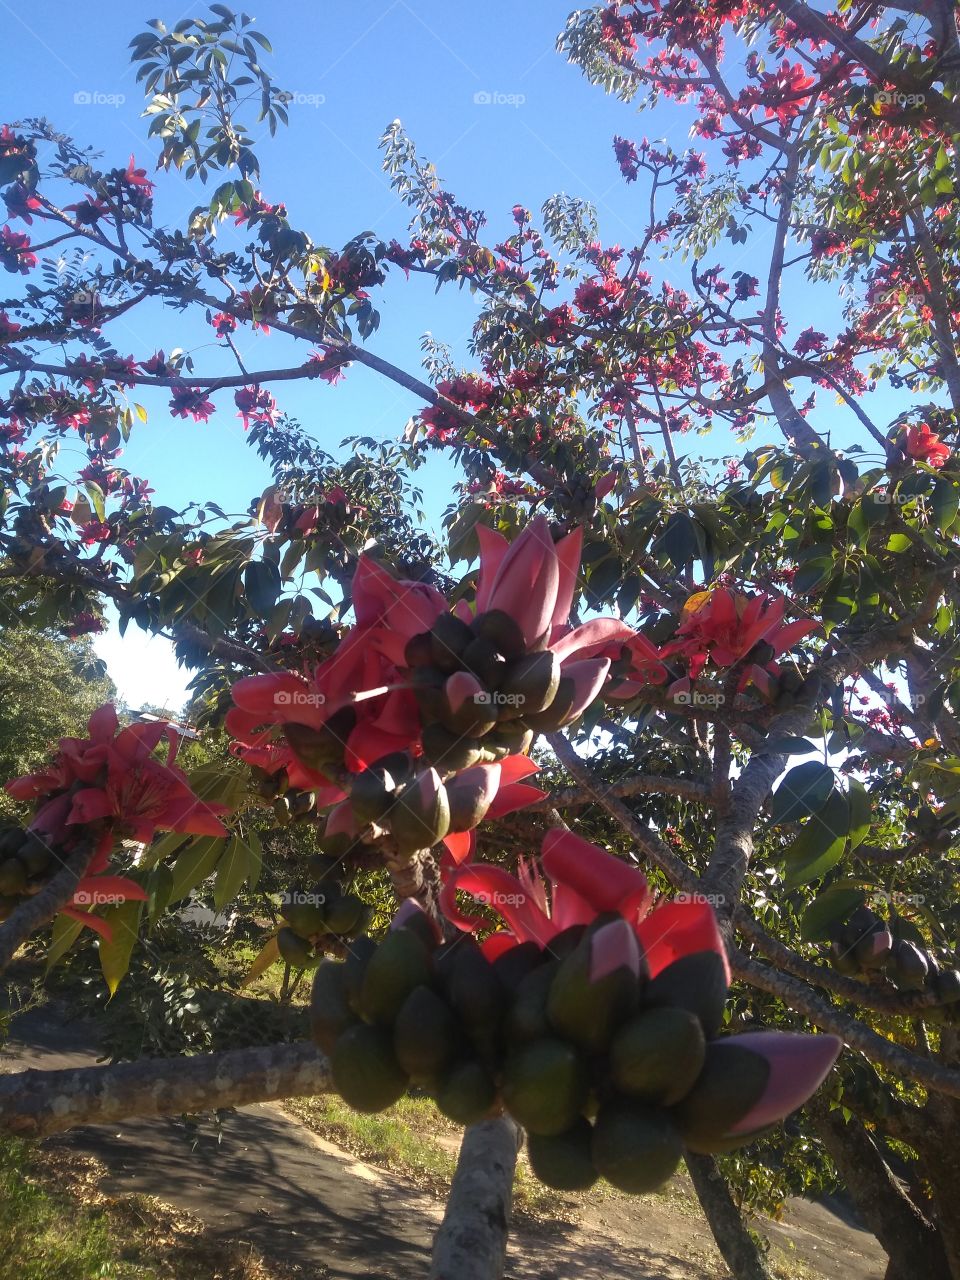 Beautiful tree with red flowers.../ Linda árvore de flores vermelhas...